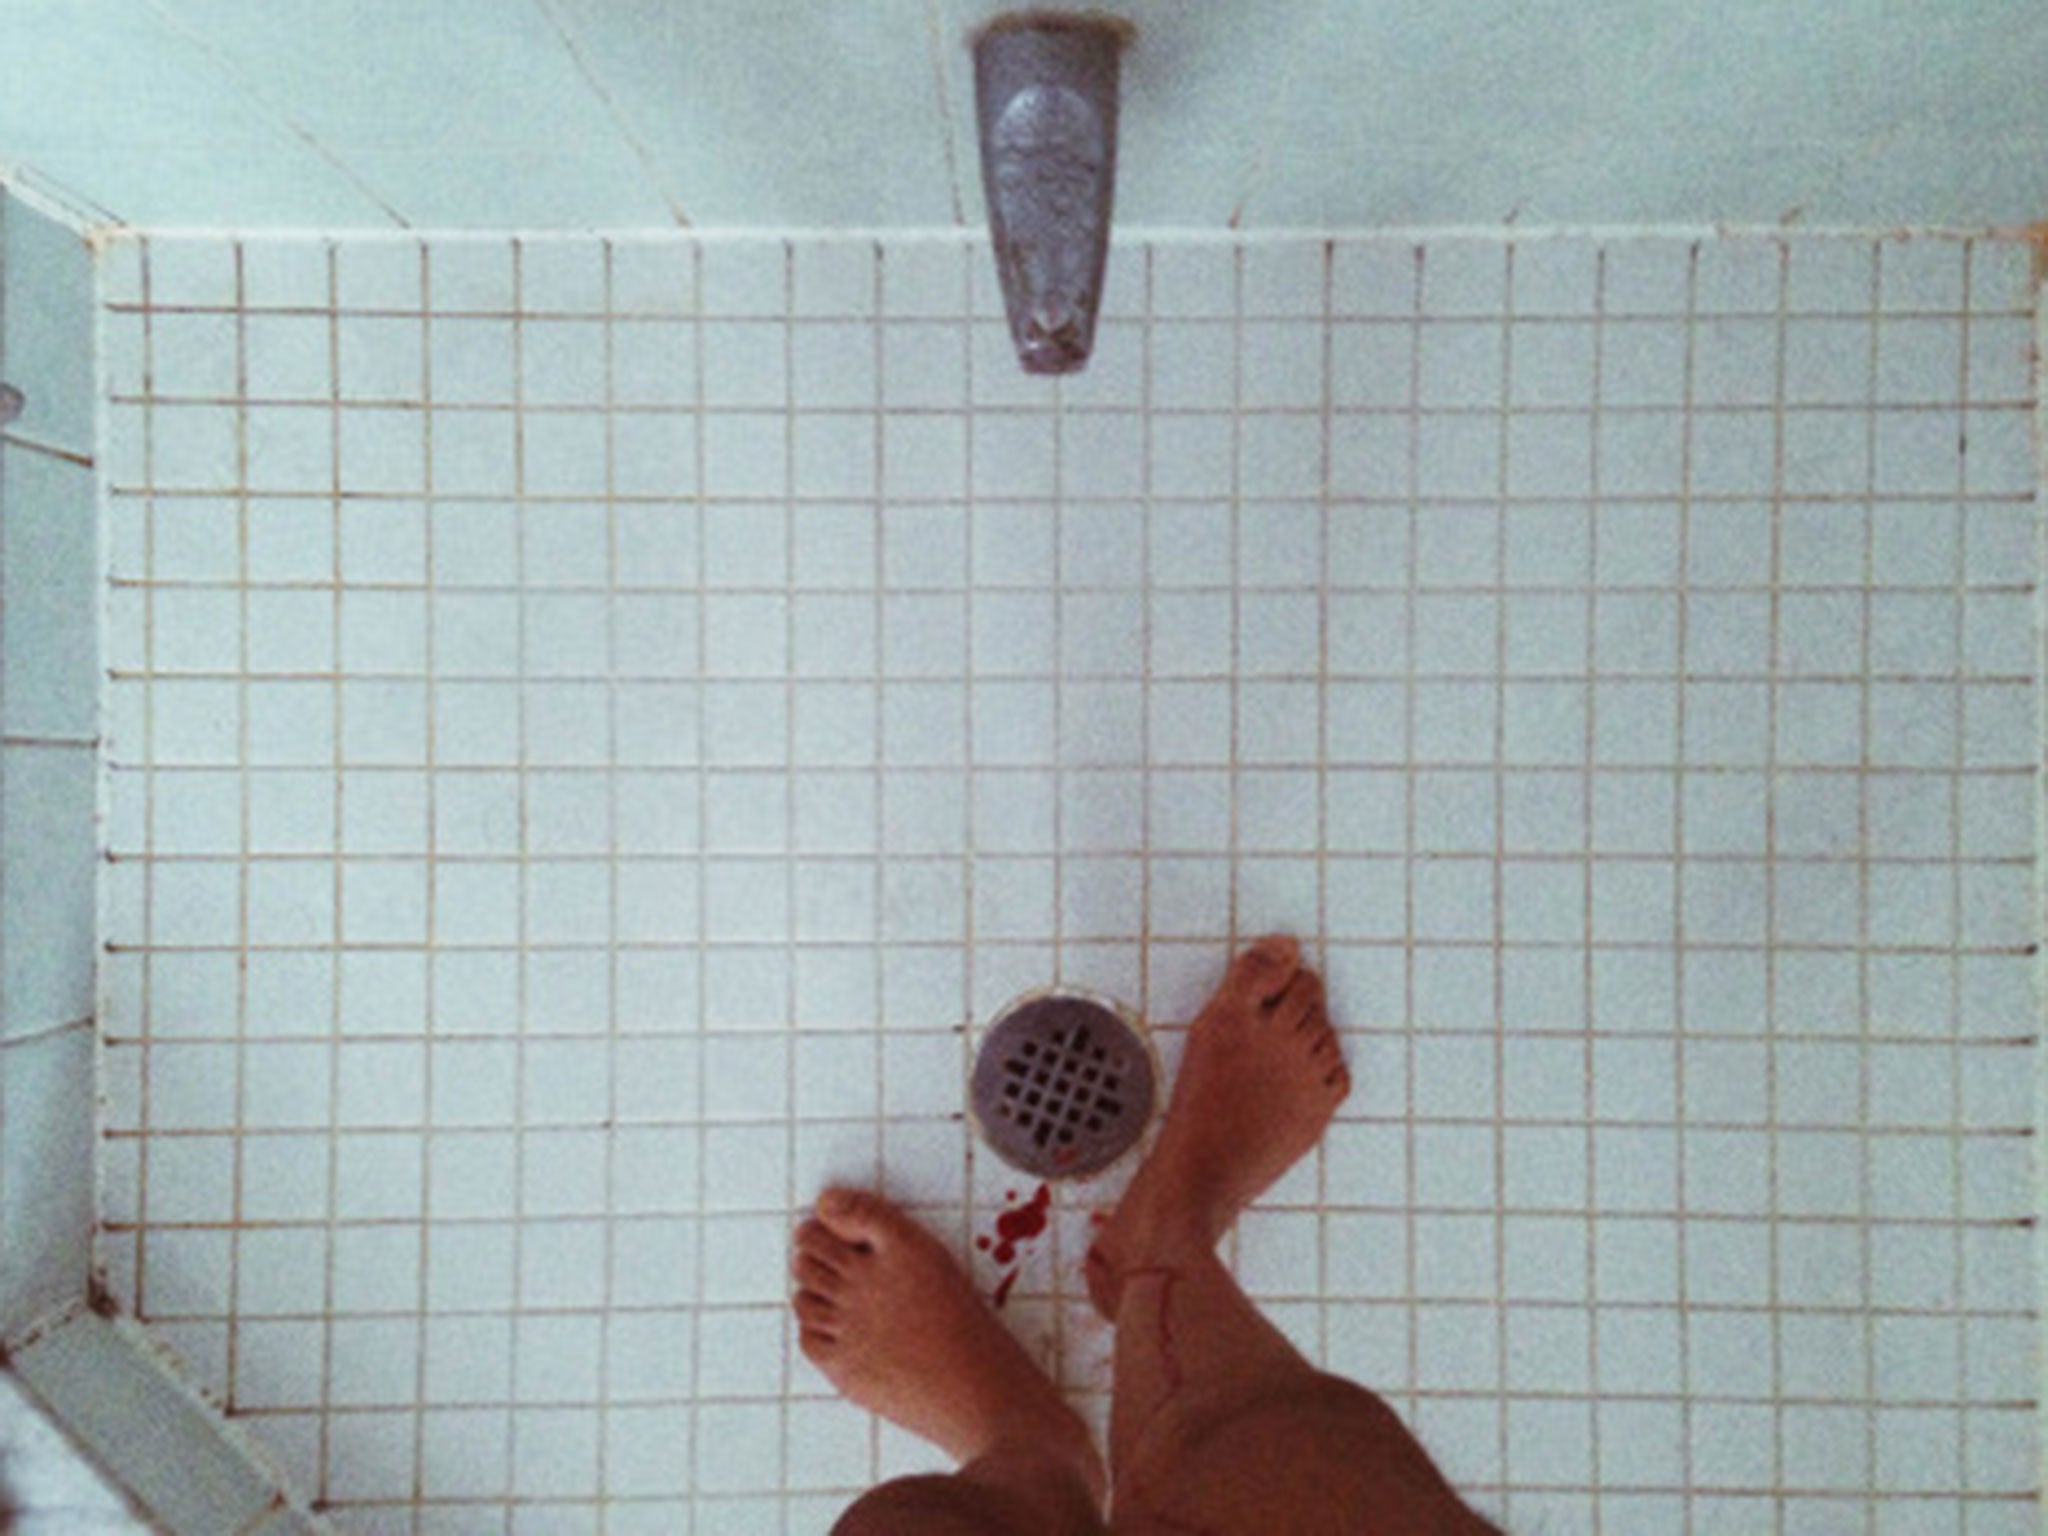 tayrodriguesc shared a photo on Instagram: “GOSTOU DESSE POST ? Menstruação:  composta por resíduos corporais, lipídi…